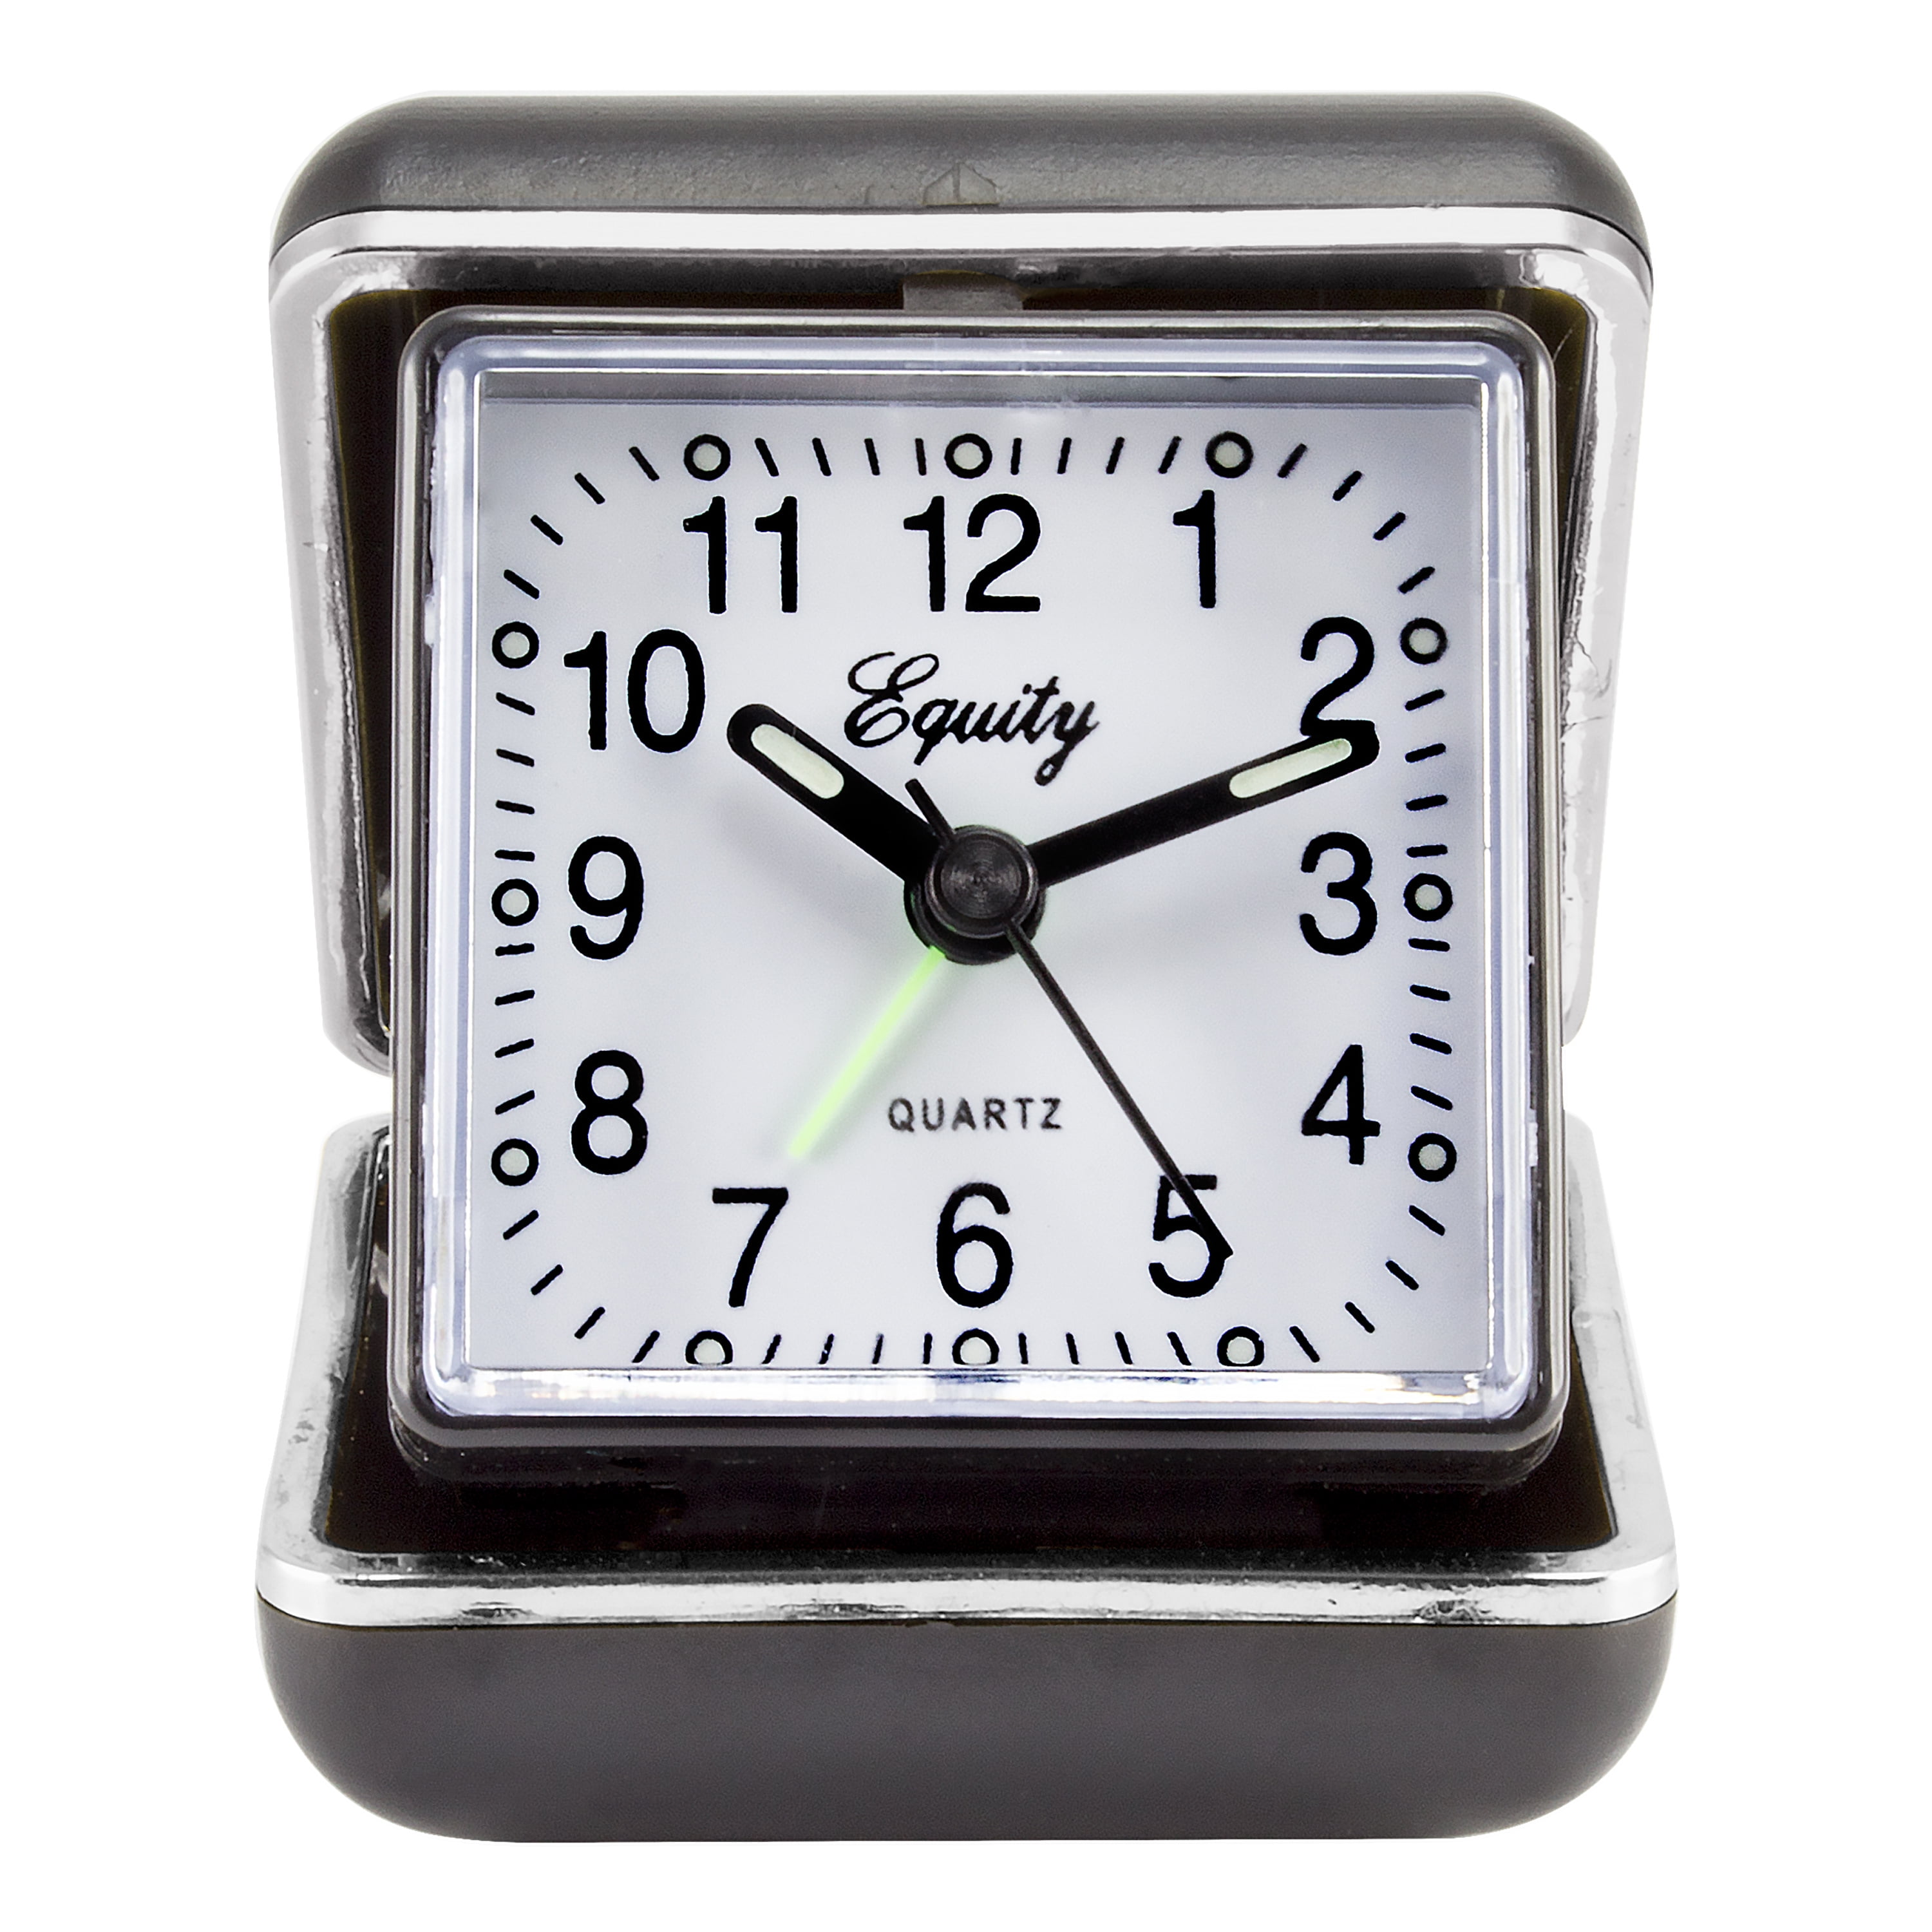 Equity by La Crosse 13017 Analog Twin Bell Quartz Alarm Clock La Crosse Technology Ltd.